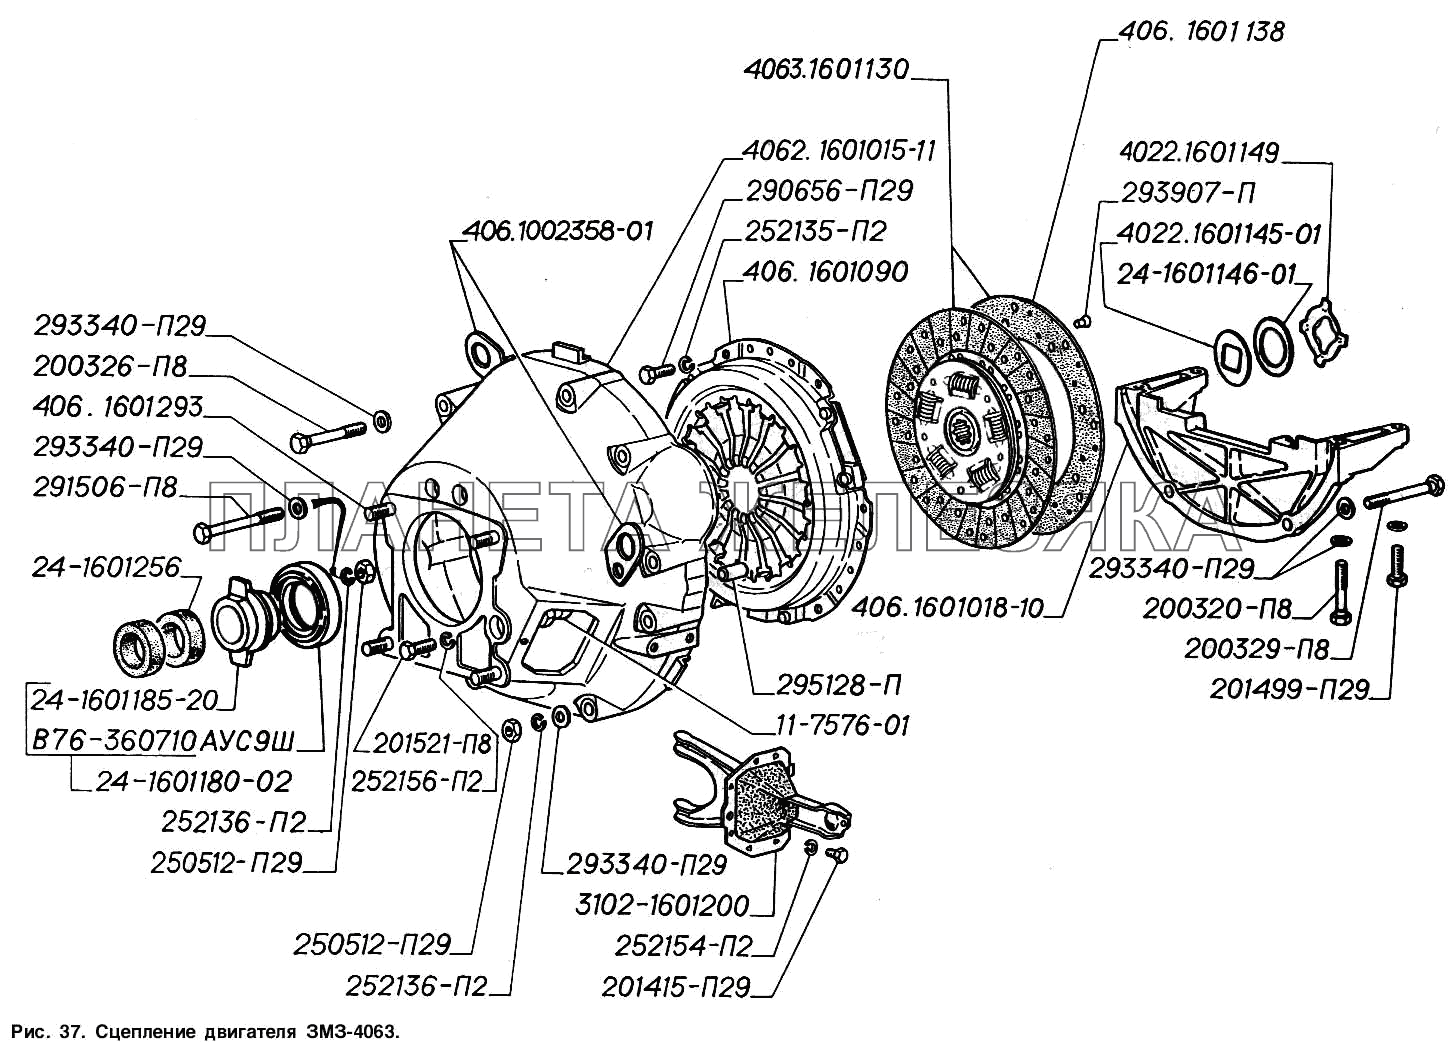 Сцепление двигателя ЗМЗ-4063 ГАЗ-2217 (Соболь)